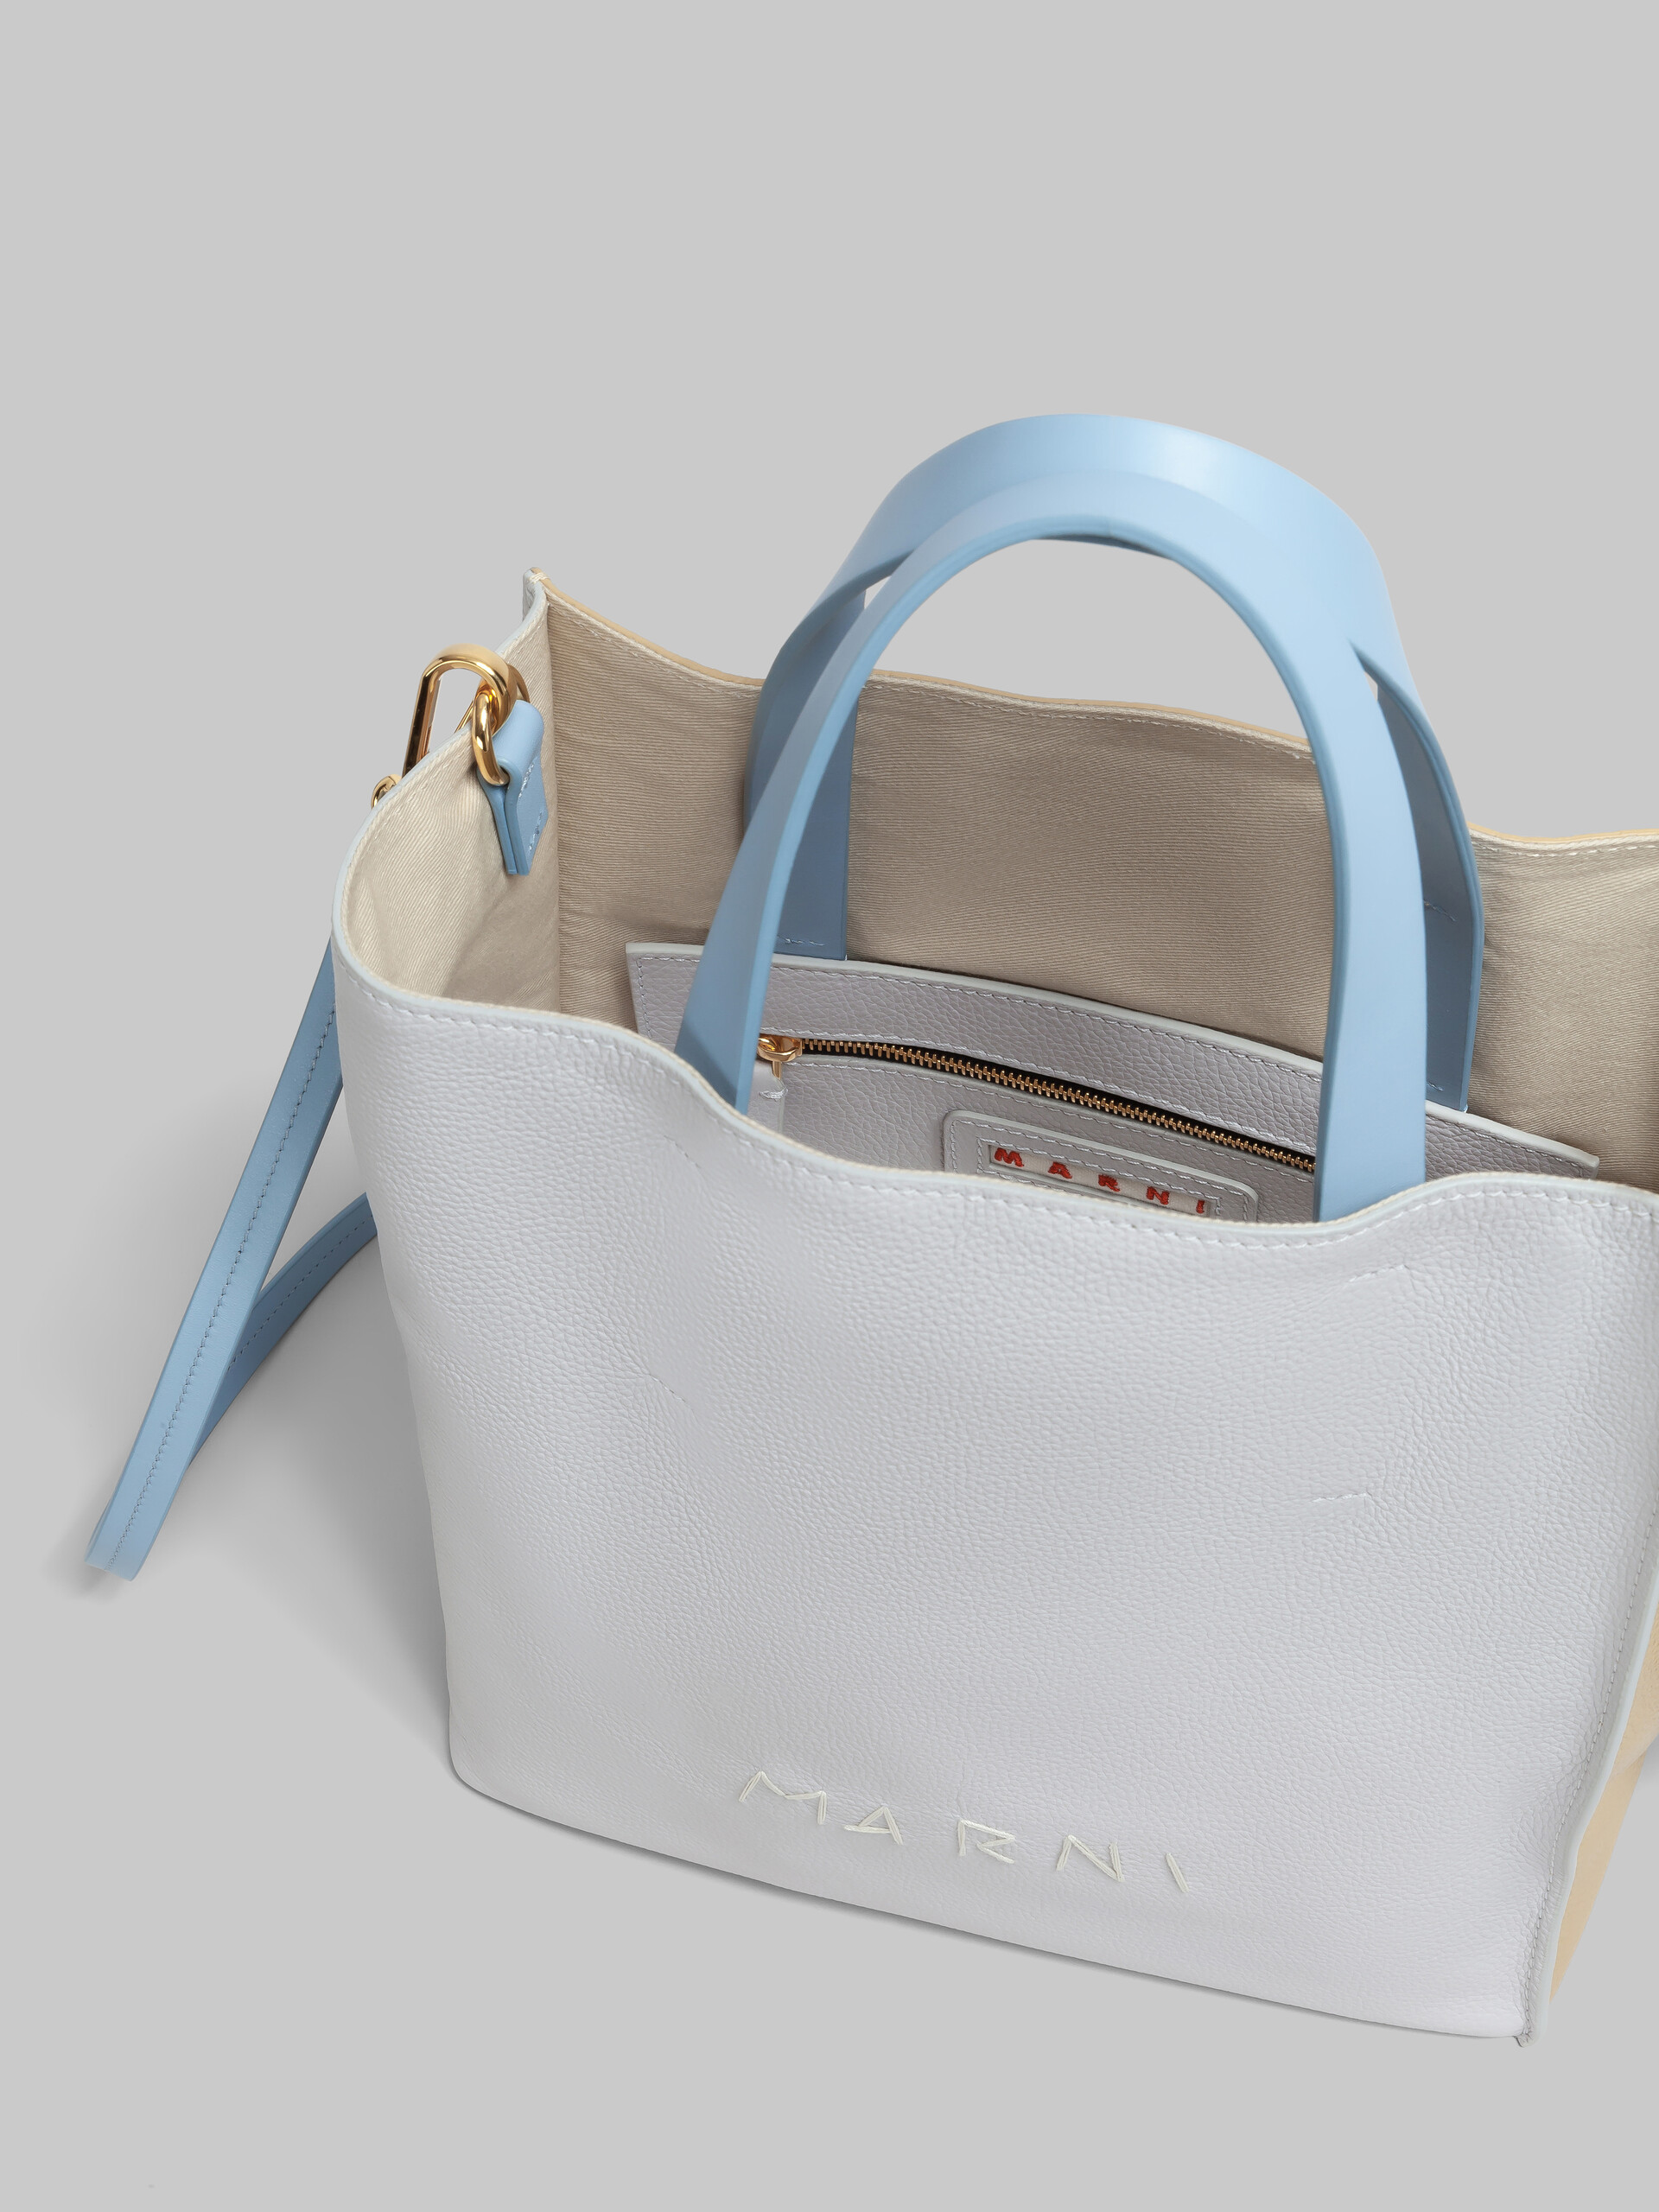 Mini-sac Museo Soft en cuir ivoire et marron avec effet raccommodé Marni - Sacs cabas - Image 3